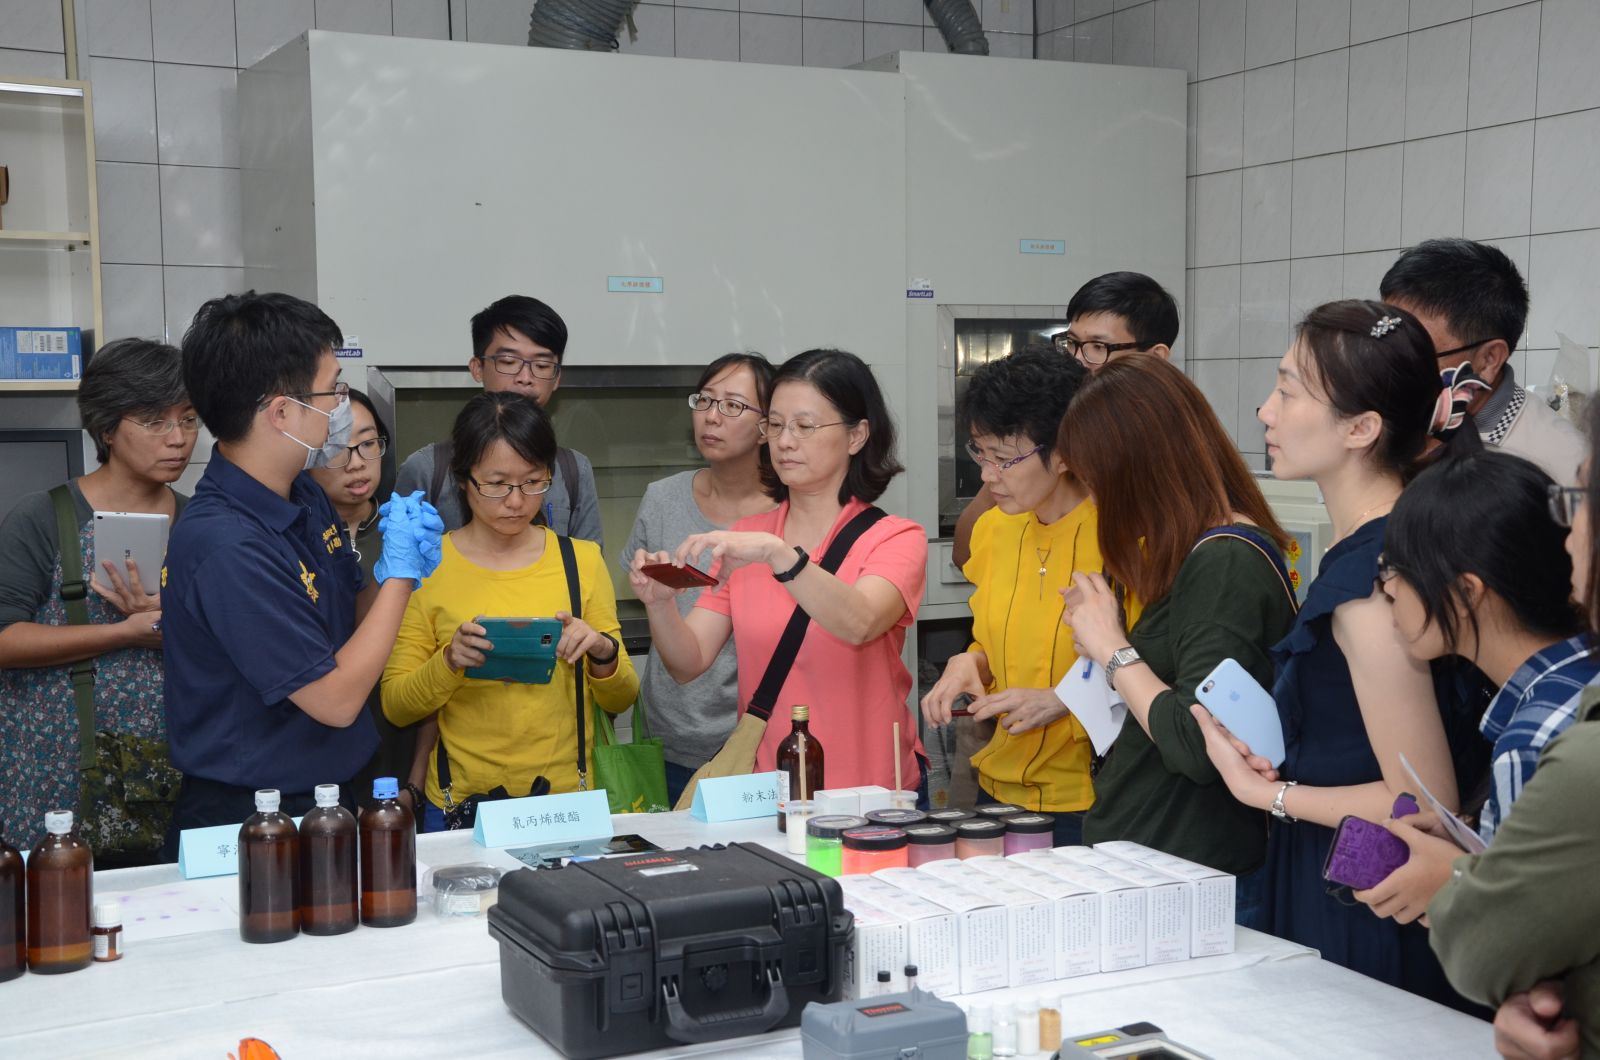 反毒新利器-拉曼光譜儀 化學老師都說「讚!」 -嘉南地區高中化學教師參訪臺南市政府警察局 | 文章內置圖片